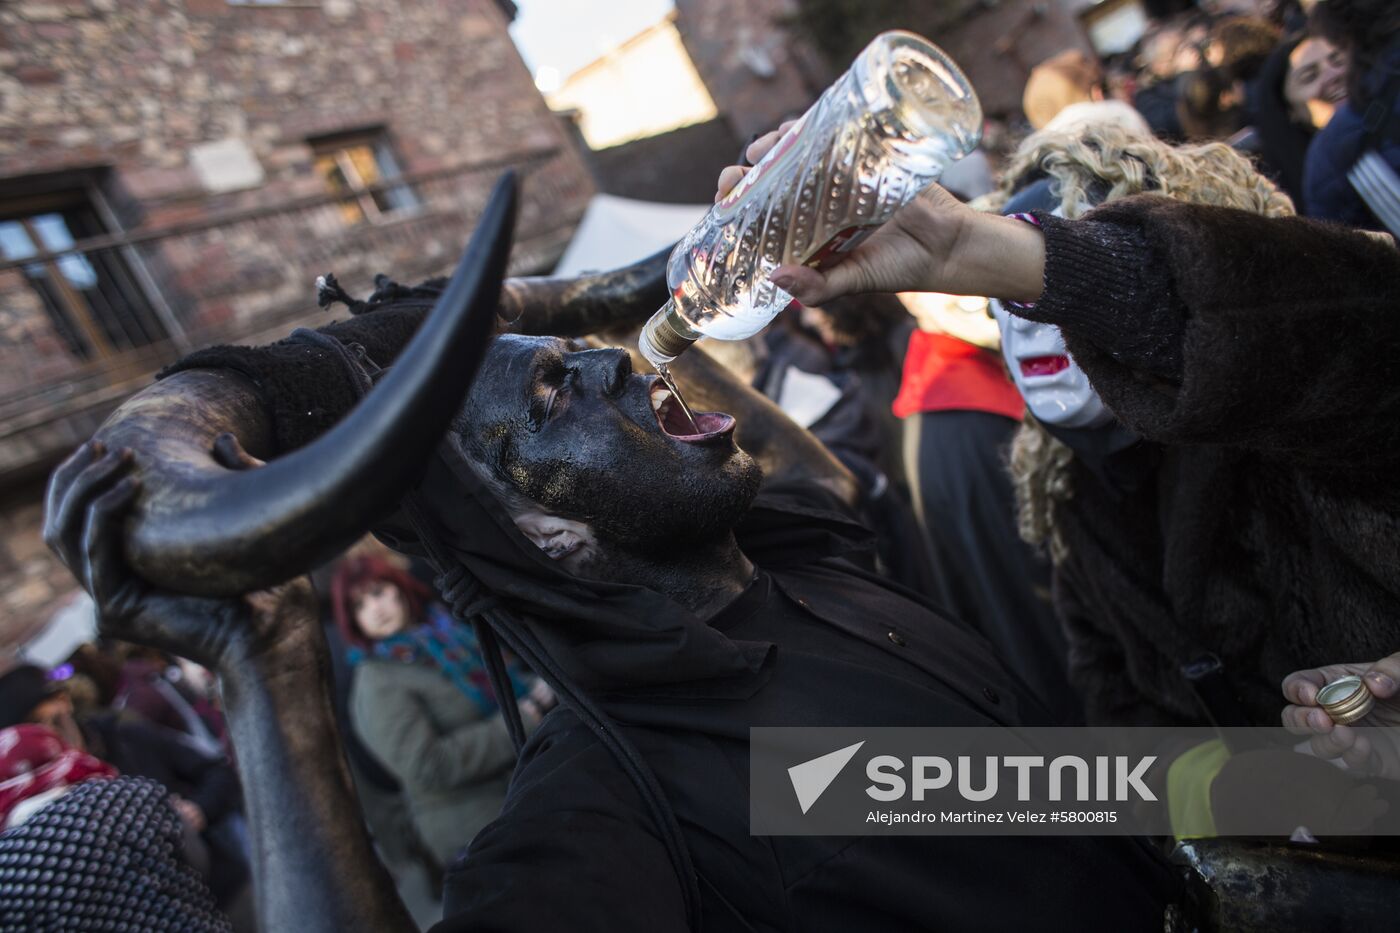 Spain Devil Carnival